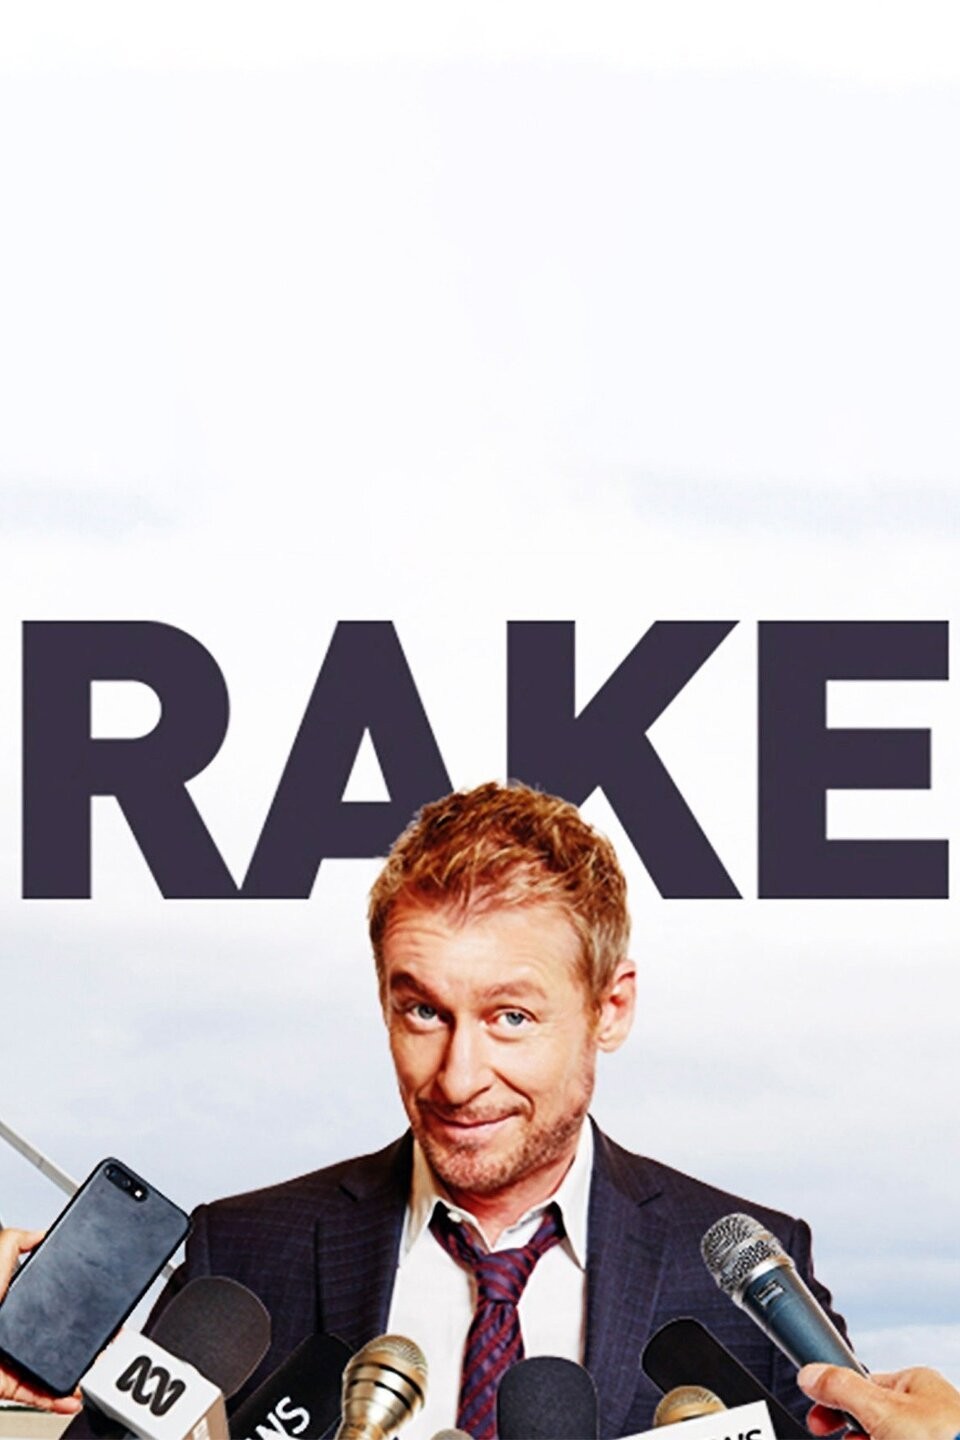 Rake: Season 2 [DVD](品)　(shin